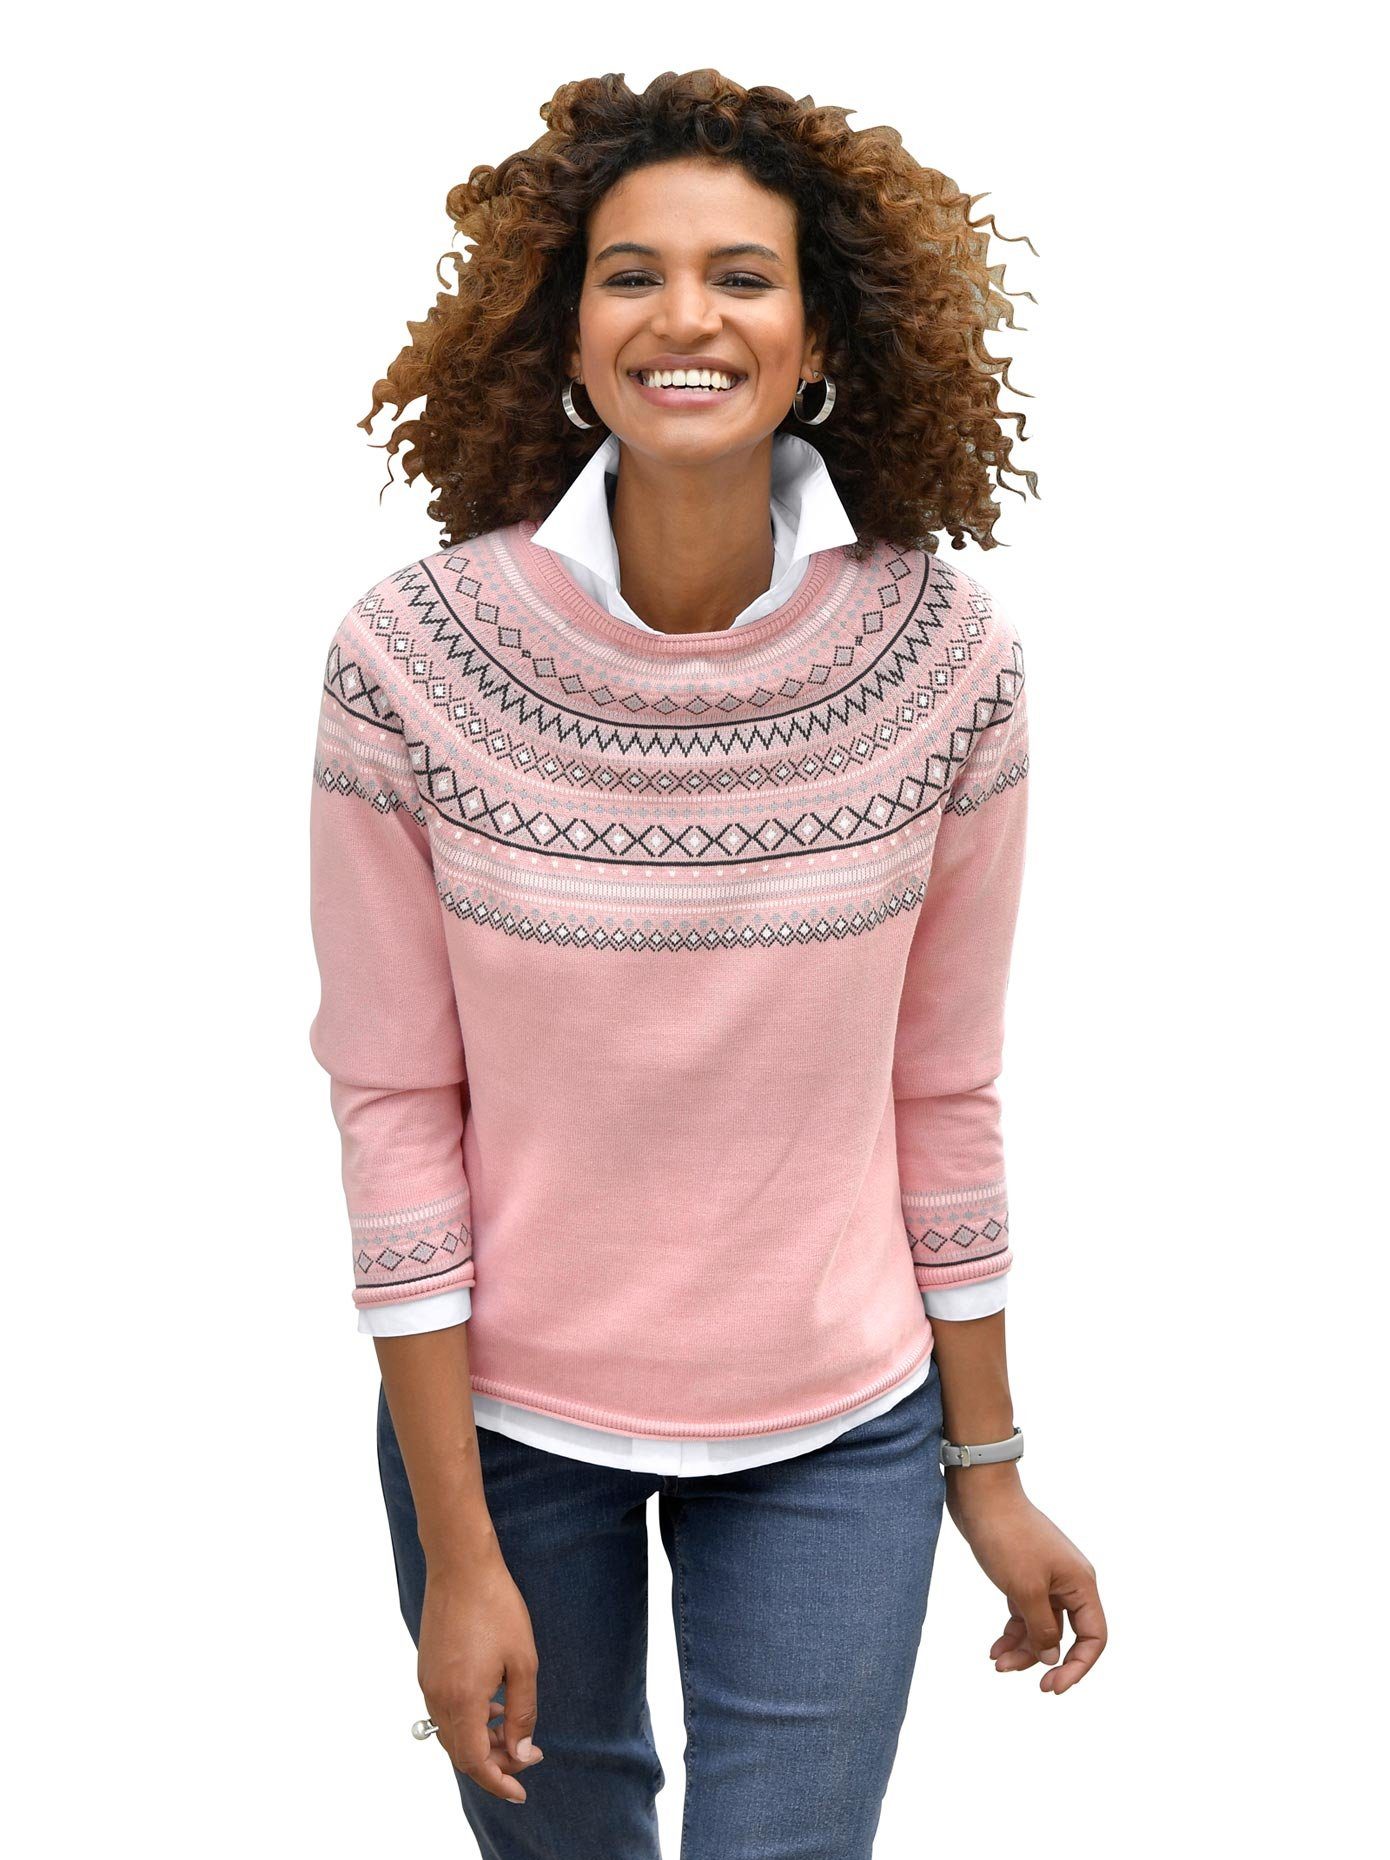 Inspirationen Norwegerpullover Pullover online kaufen | OTTO